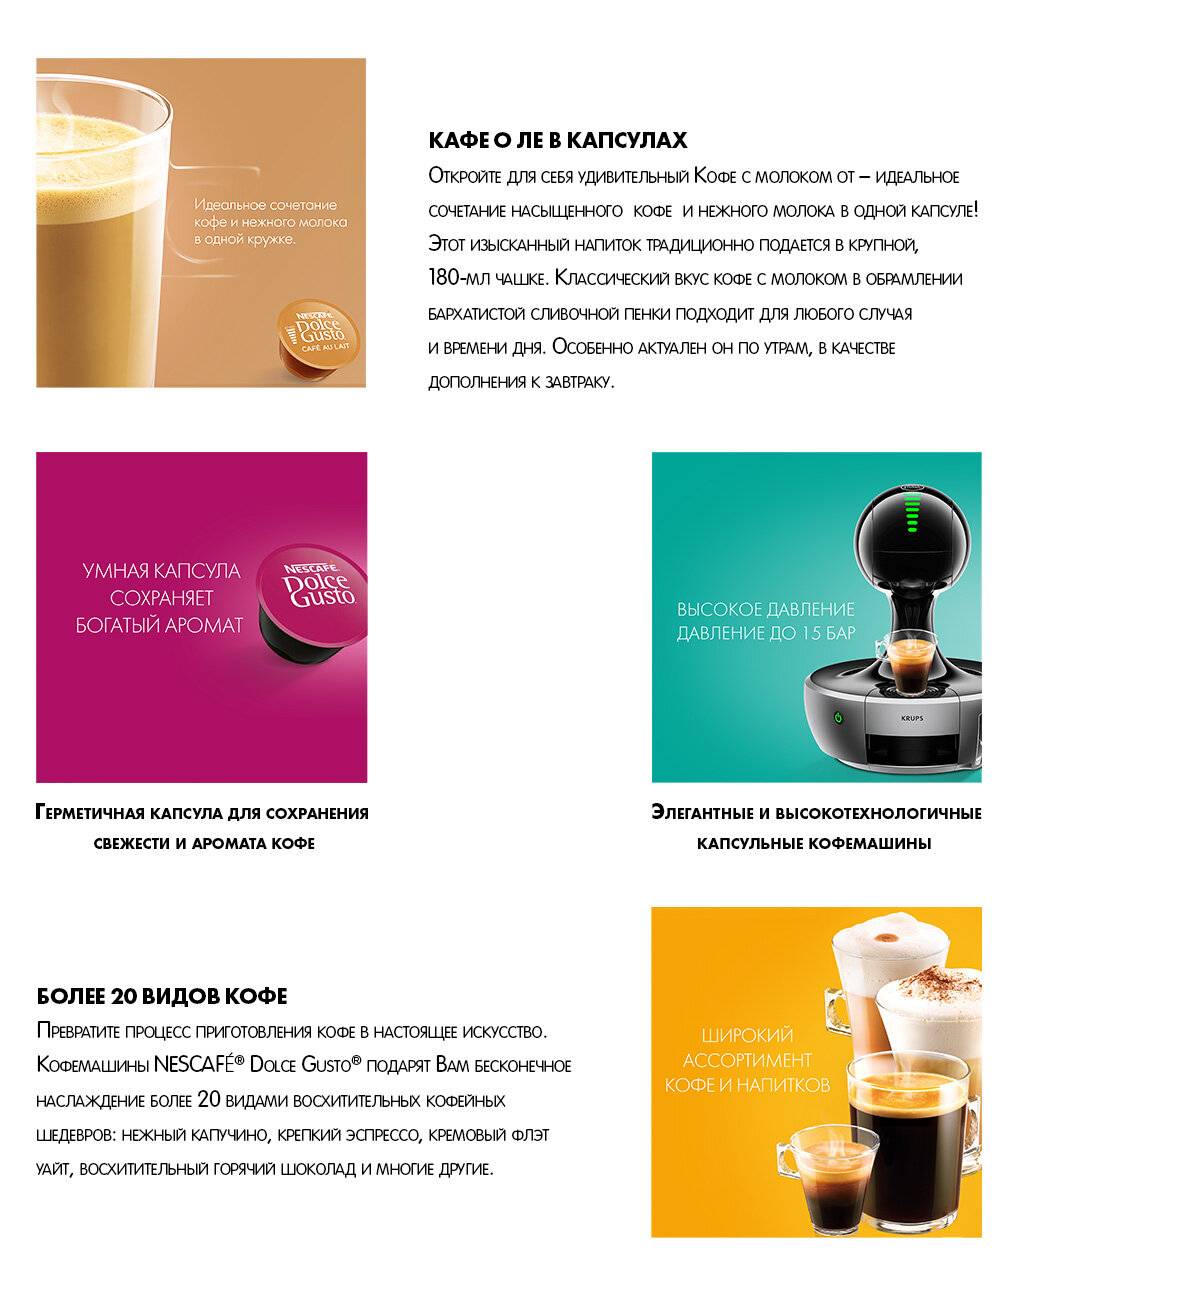 Топ-15 лучших капсульных кофемашин для дома и офиса: рейтинг 2019-2020 года, характеристики и какую выбрать, отзывы покупателей